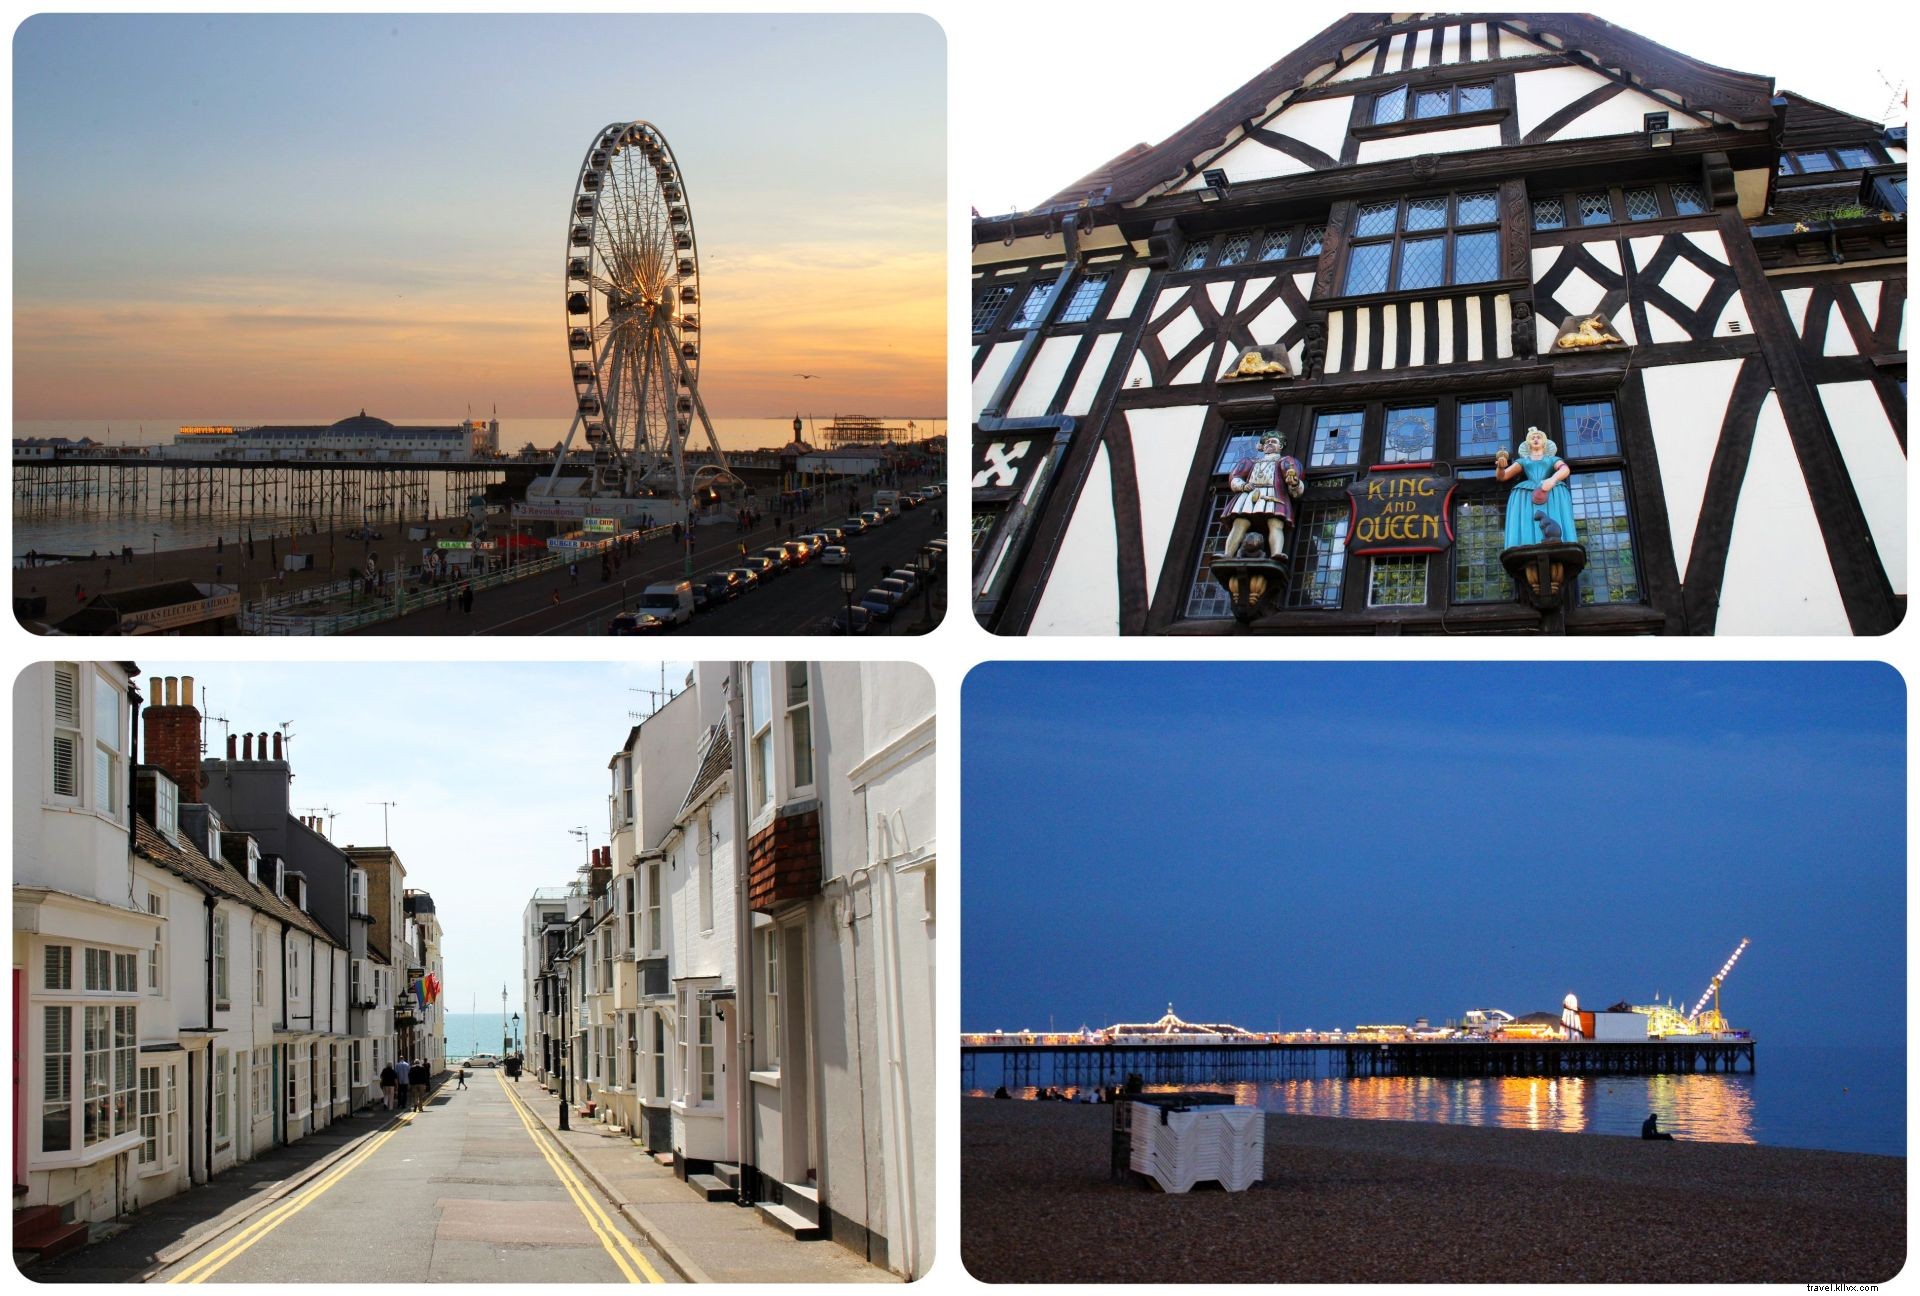 Visite Brighton:O que torna Brighton tão atraente?